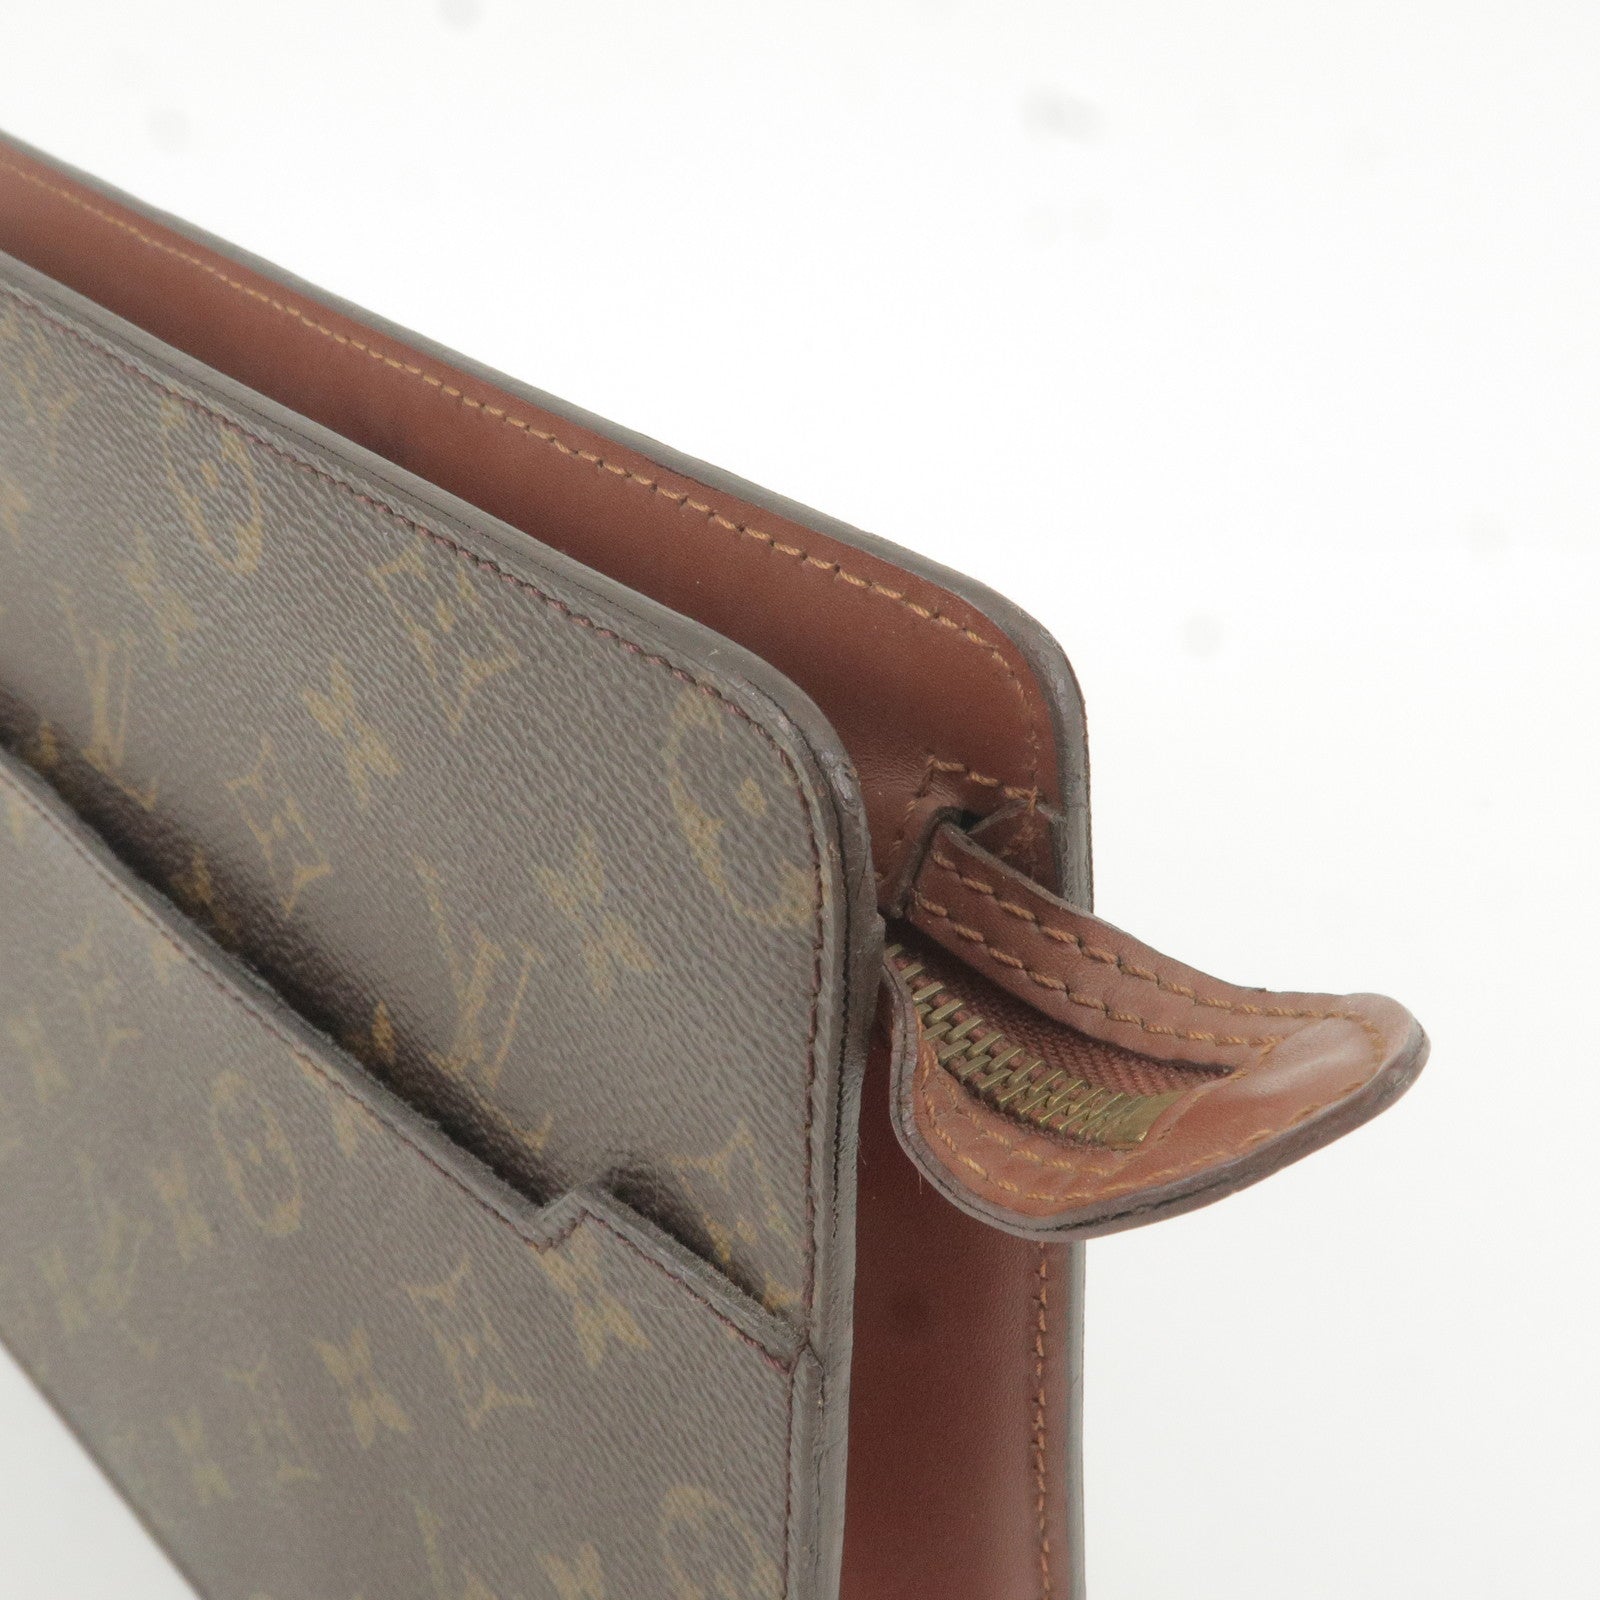 Louis Vuitton Pochette Homme - Good or Bag